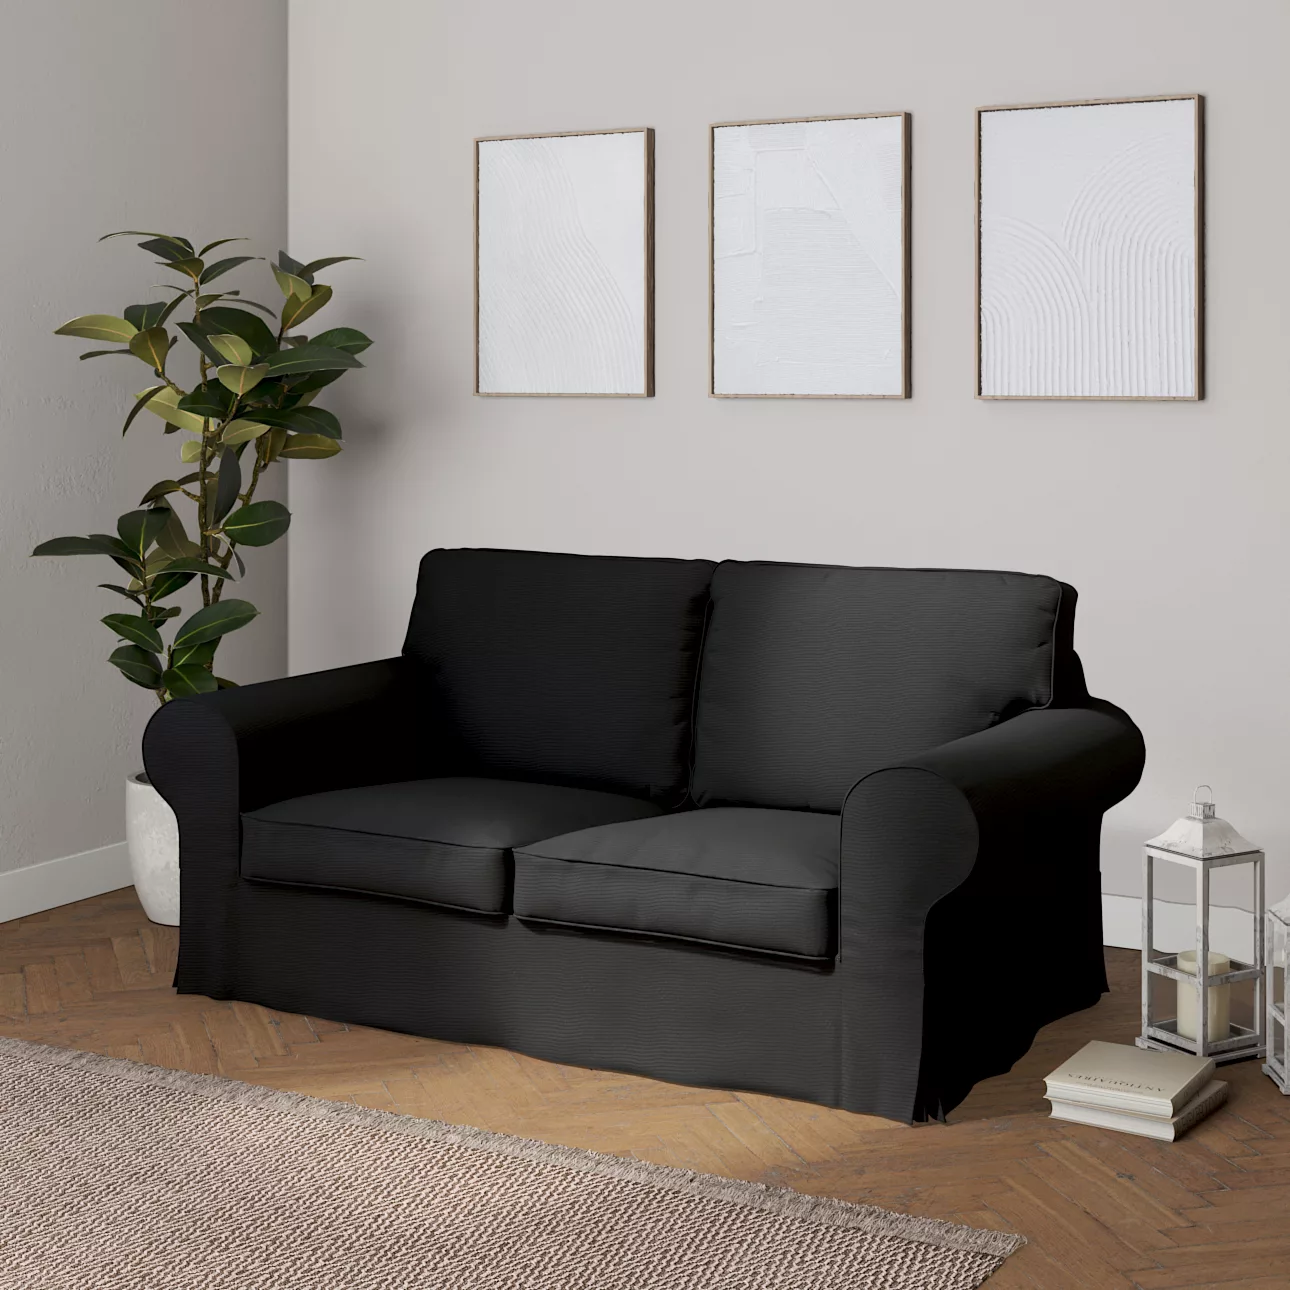 Bezug für Ektorp 2-Sitzer Schlafsofa NEUES Modell, schwarz, Sofabezug für günstig online kaufen